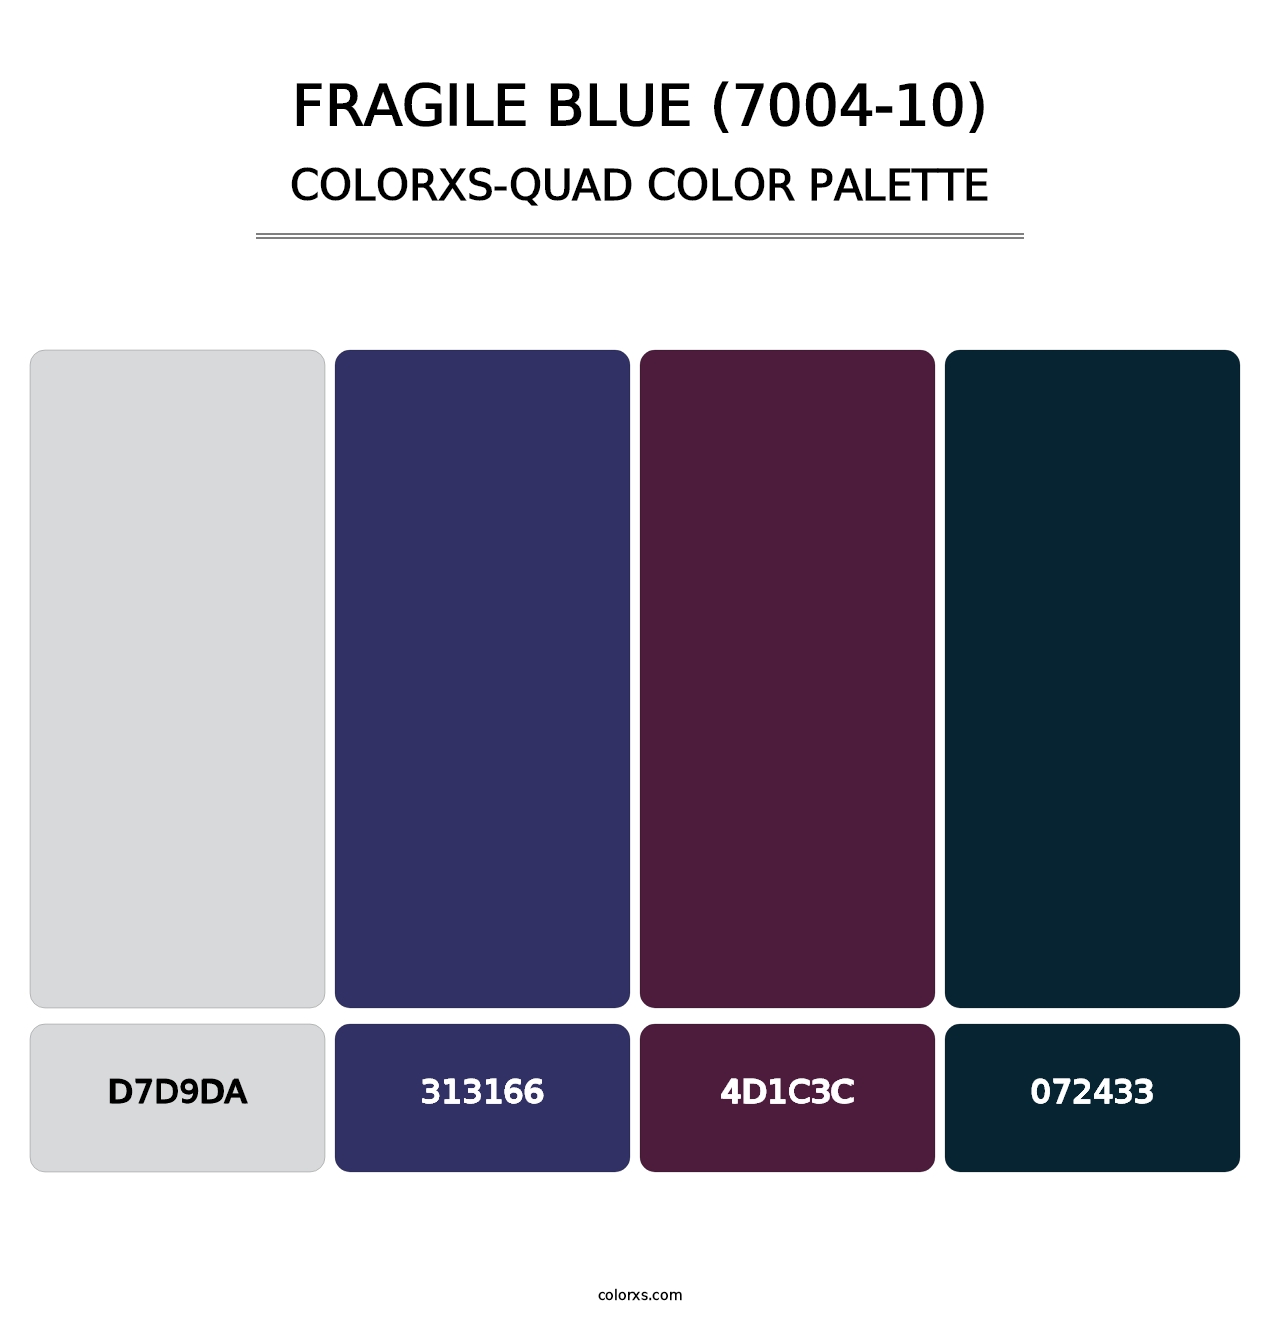 Fragile Blue (7004-10) - Colorxs Quad Palette